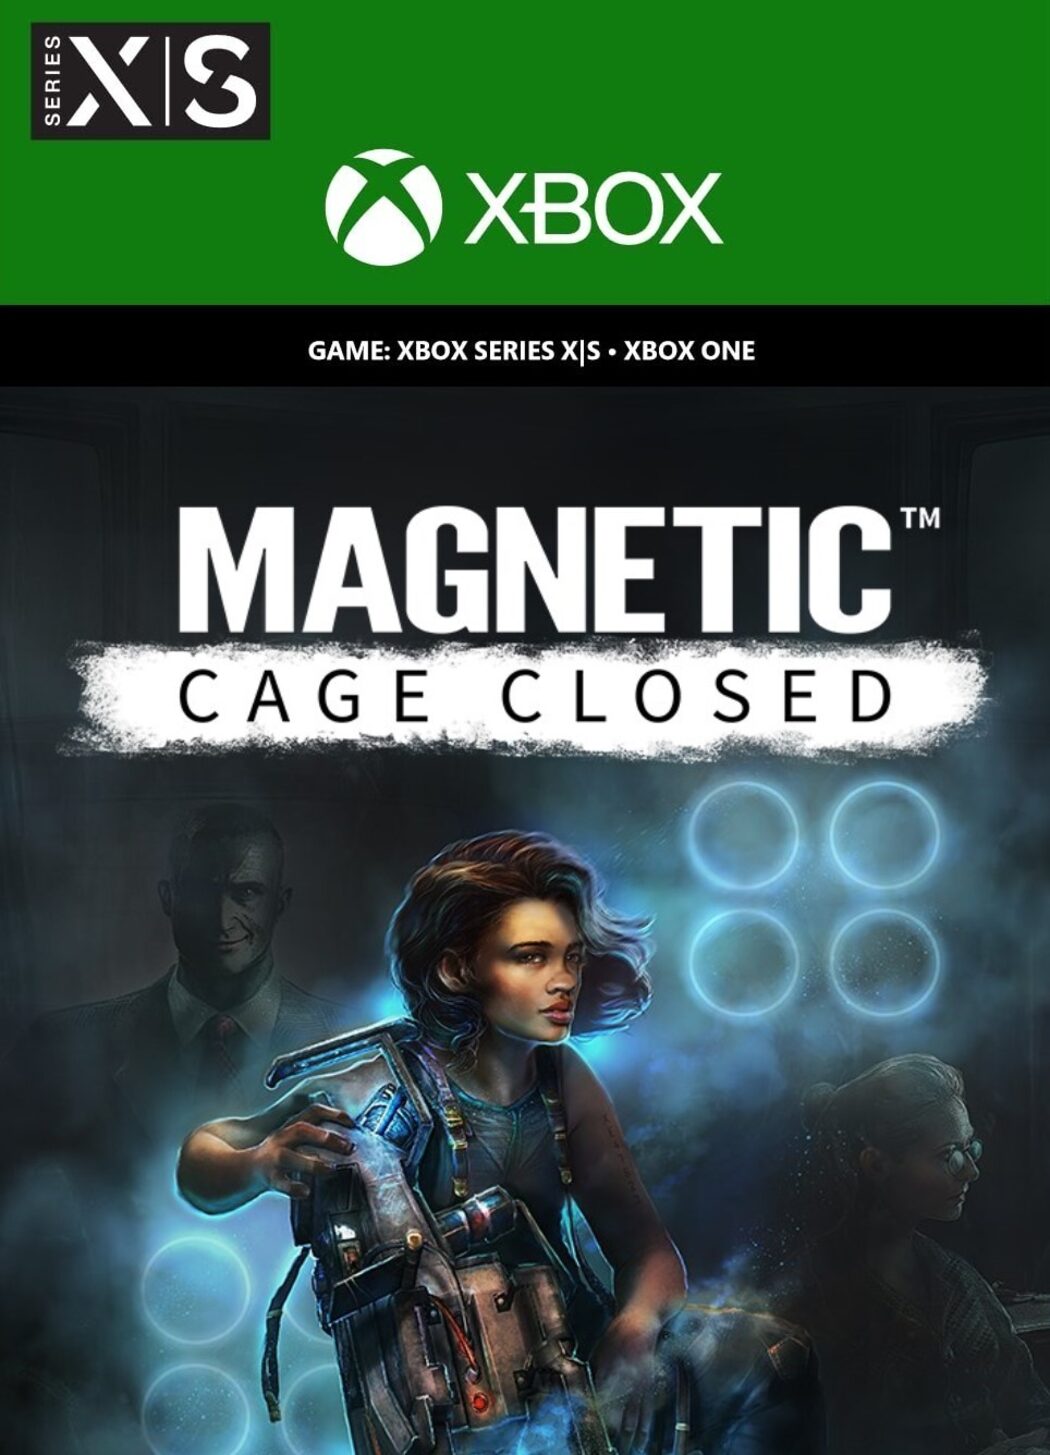 Magnetic Cage closed. Magnetic Cage closed Xbox. Magnetic игра ПК. Cage игра. Xbox аргентина купить